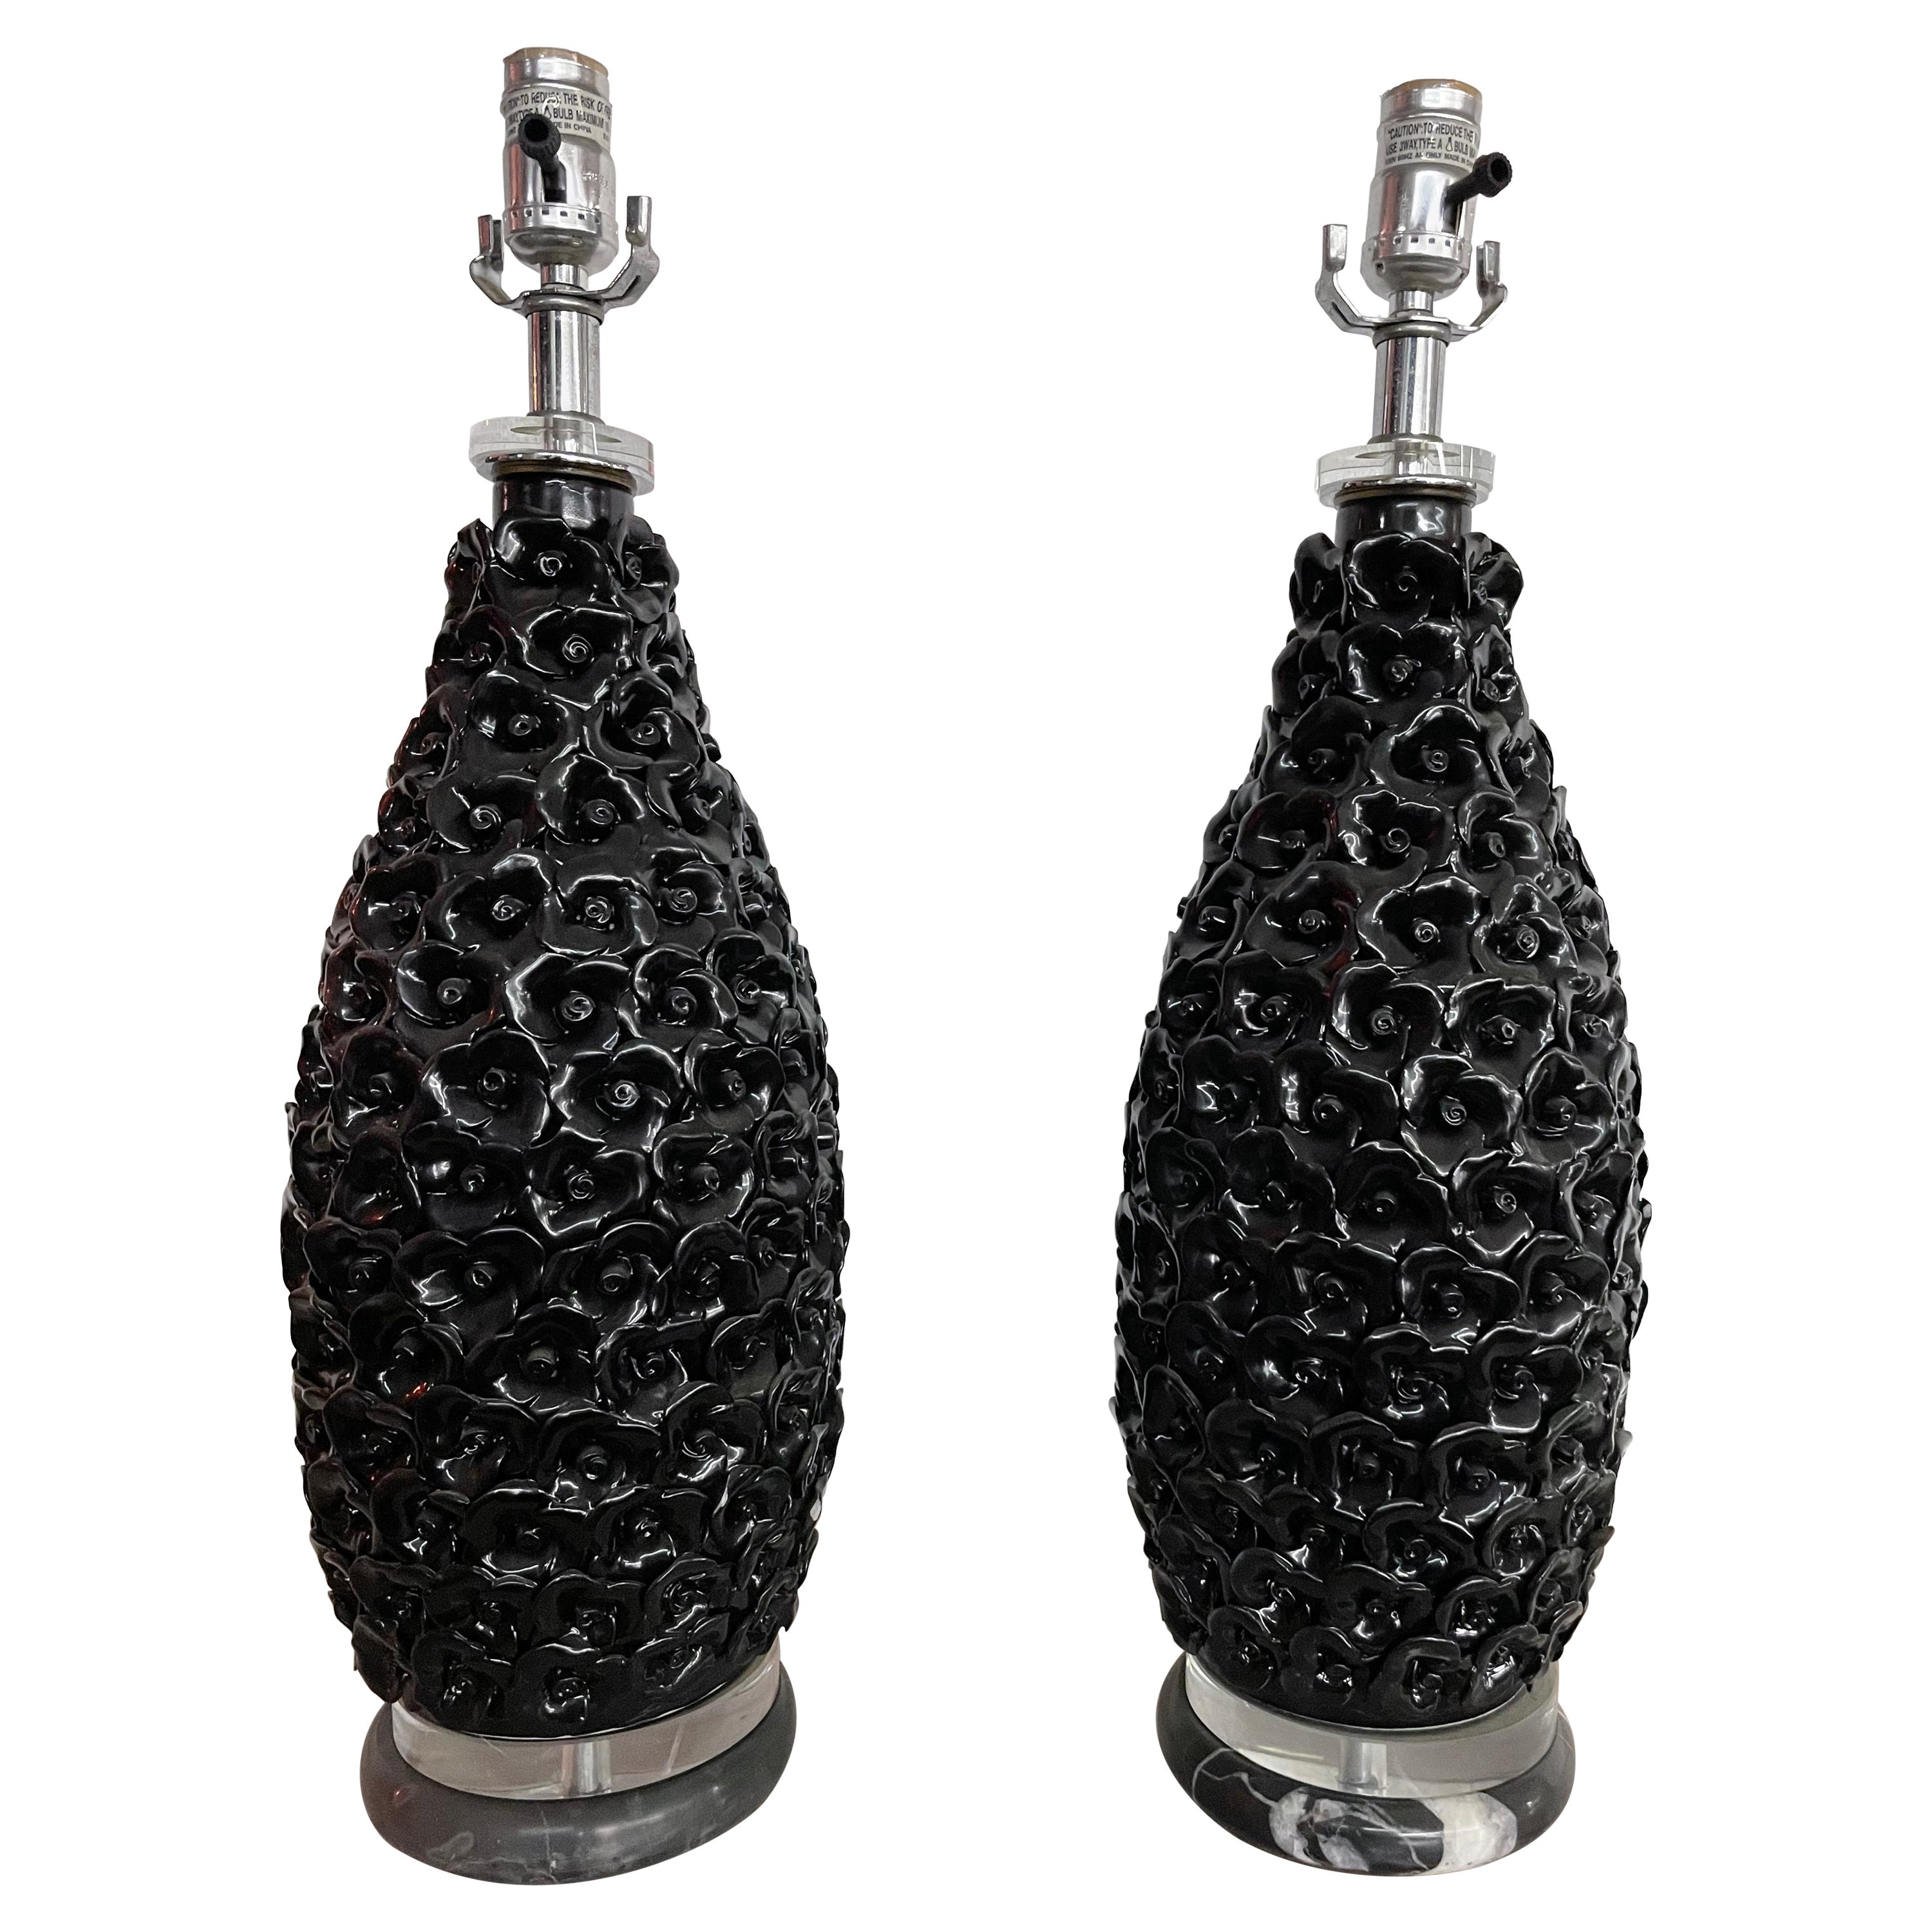 Pair of Unique Black Ebene Parisian Table Lamps